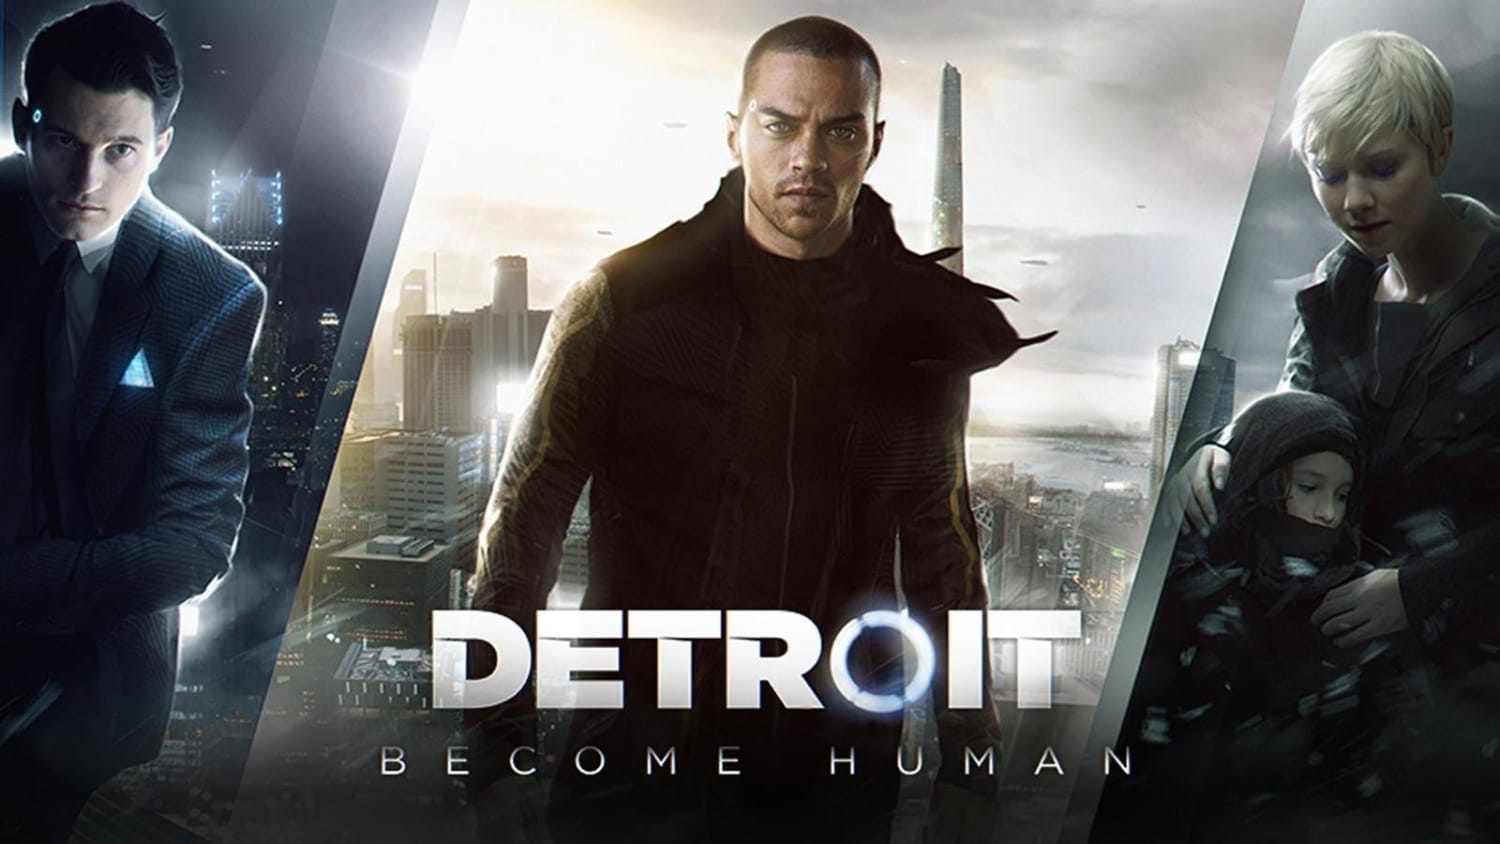 Detroit: Become Human  Diferença gráfica entre as versões da E3 2016 e do  game finalizado em 2018